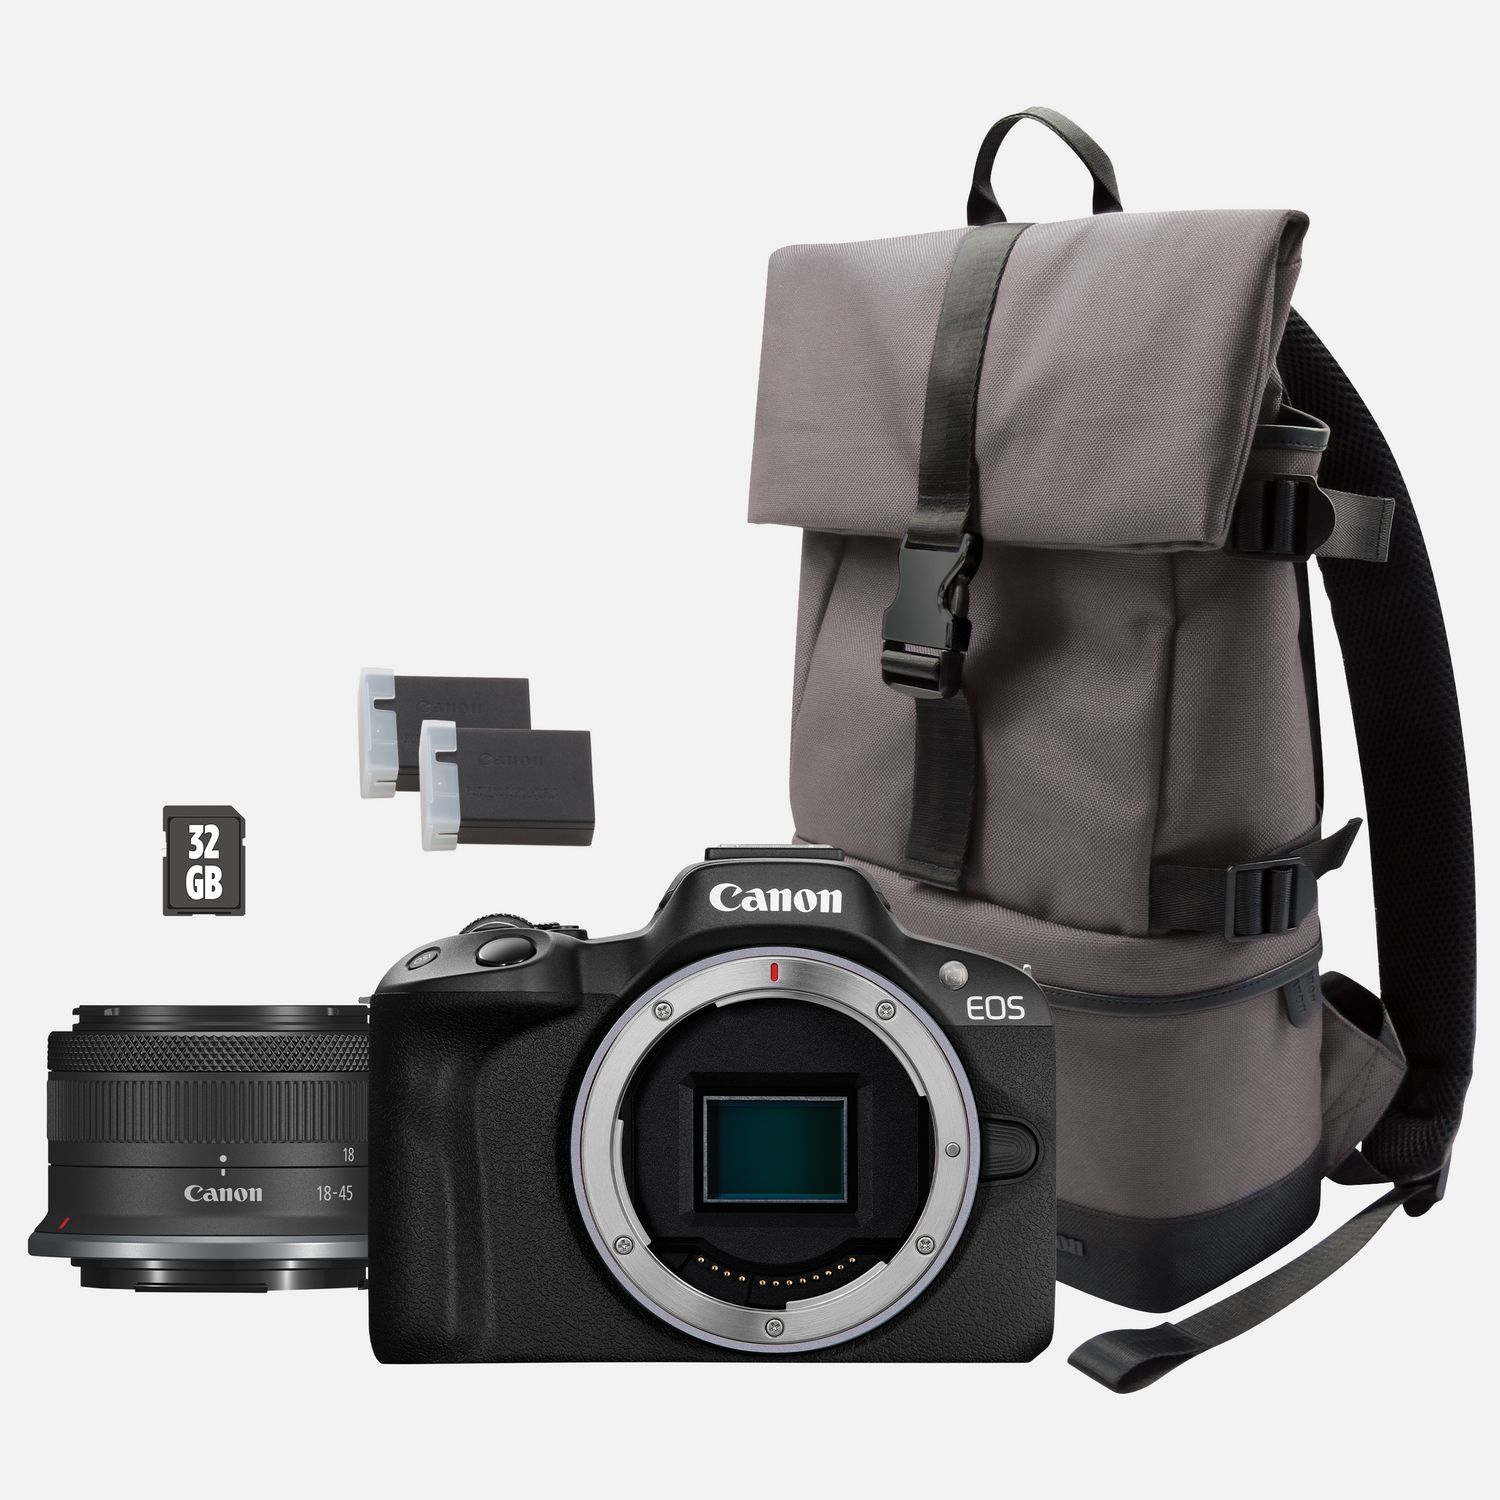 Image of Fotocamera mirrorless Canon EOS R50, Nero + obiettivo RF-S 18-45mm F4.5-6.3 IS STM + zaino + scheda SD + batteria aggiuntiva